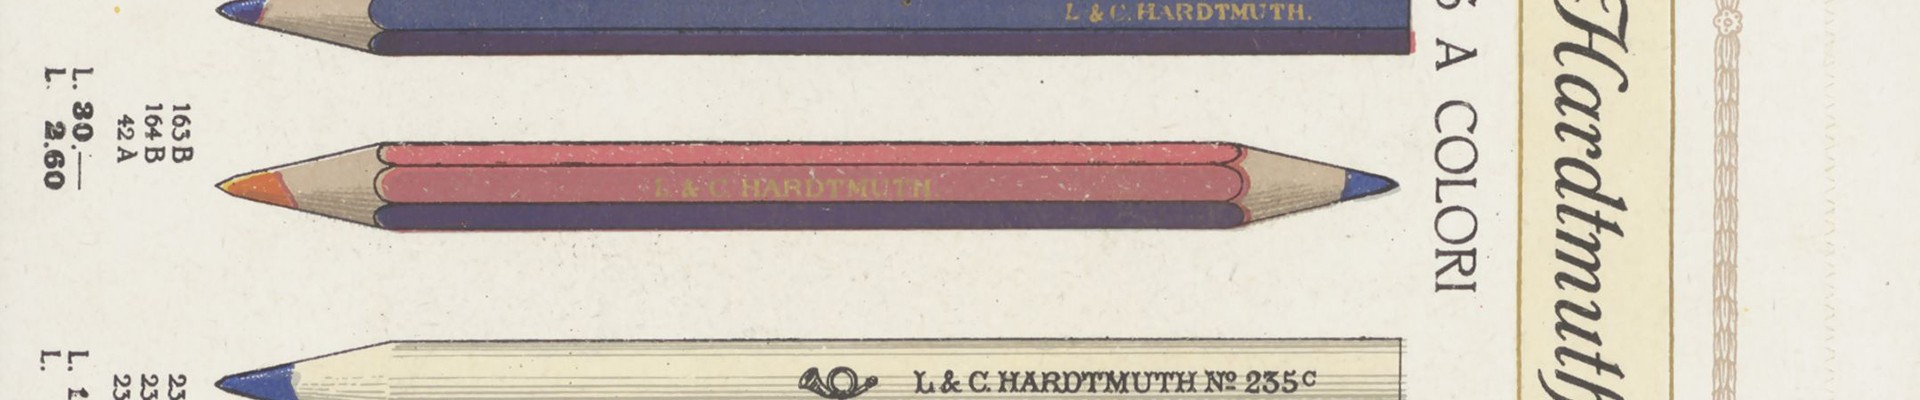 Werbeprospekt der Firma L. C. Hardtmuth  um 1930. Der Ausschnitt zeigt drei Buntstifte: 